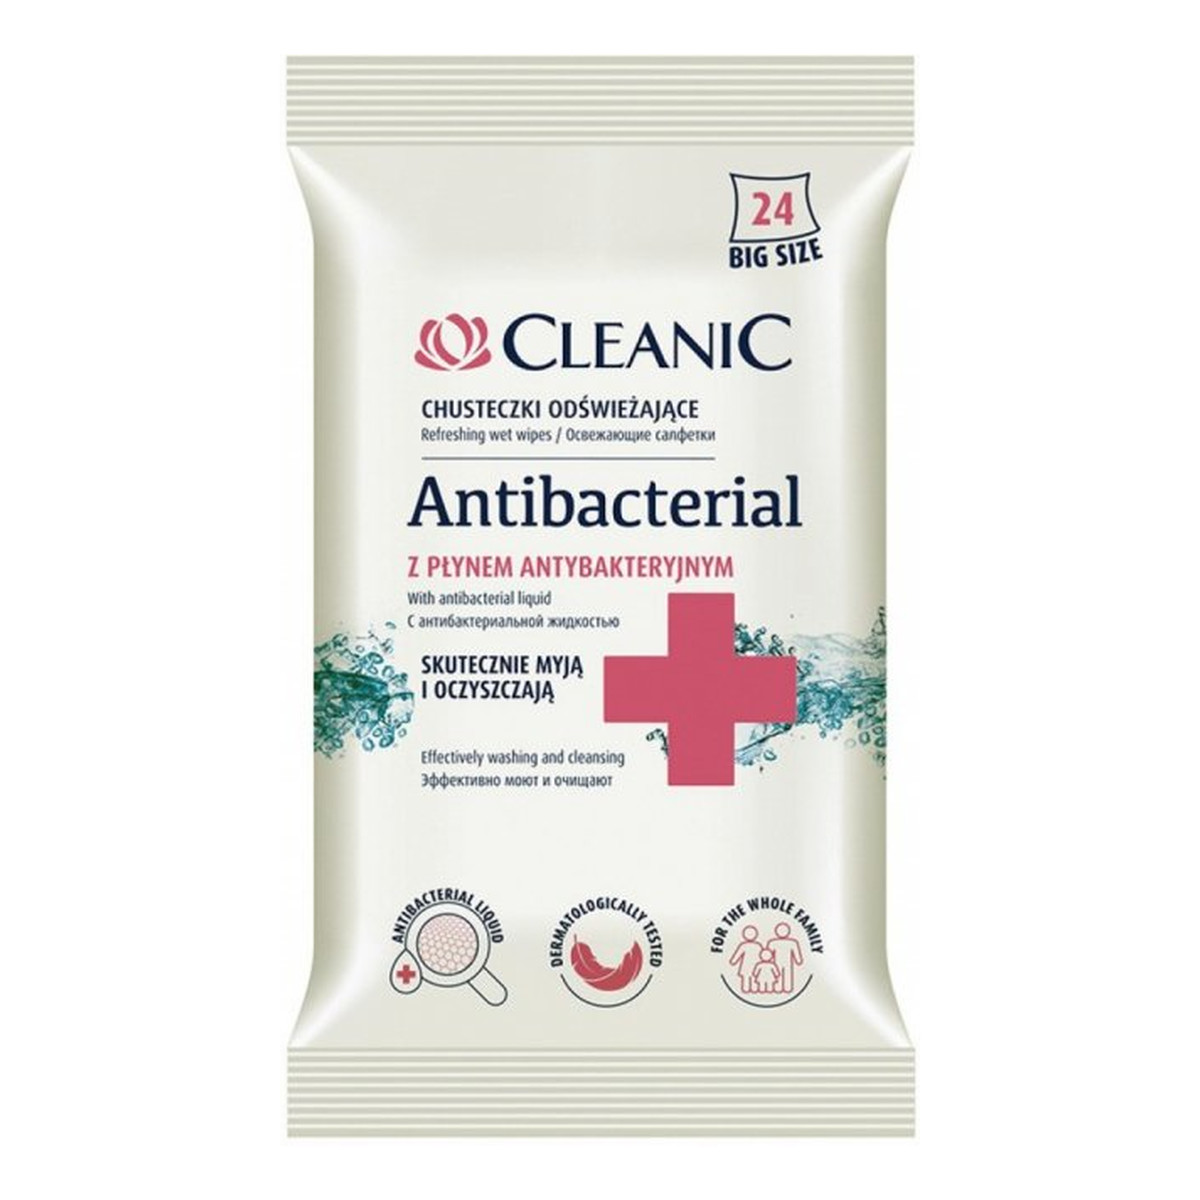 Cleanic Antibacterial chusteczki odświeżające z płynem antybakteryjnym 24szt.